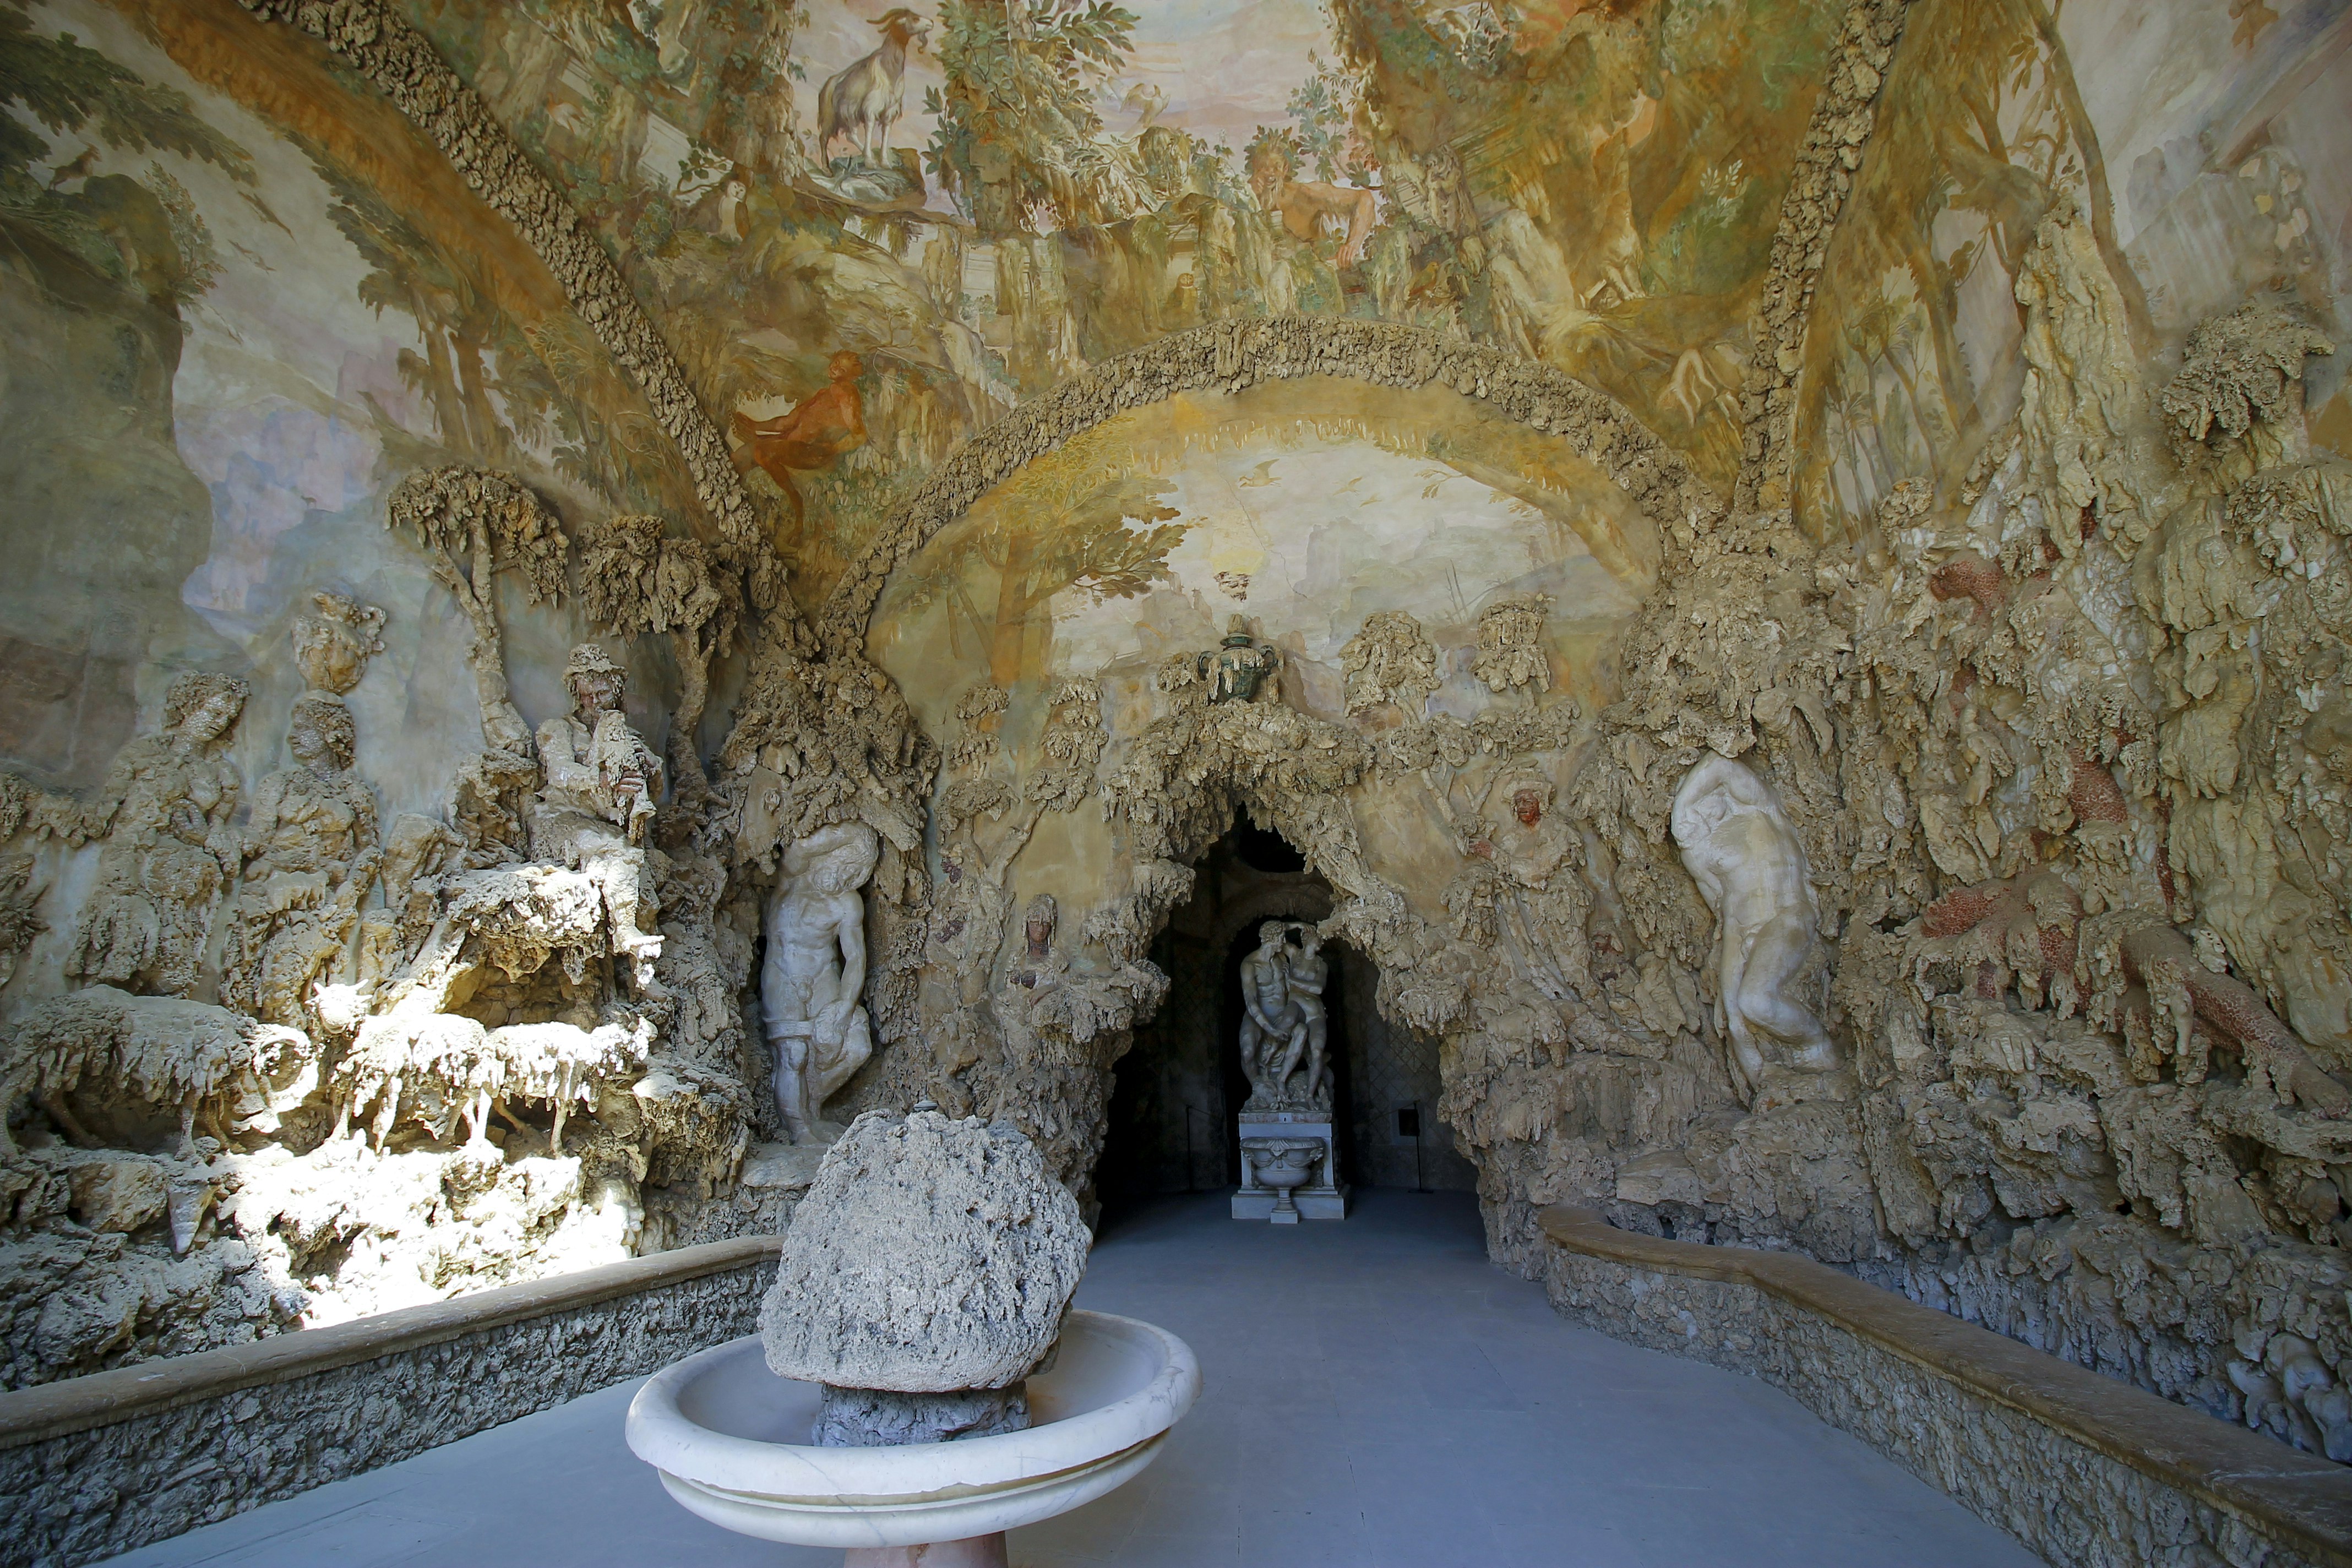 Buontalenti Grotto (Grotta di Buontalenti)